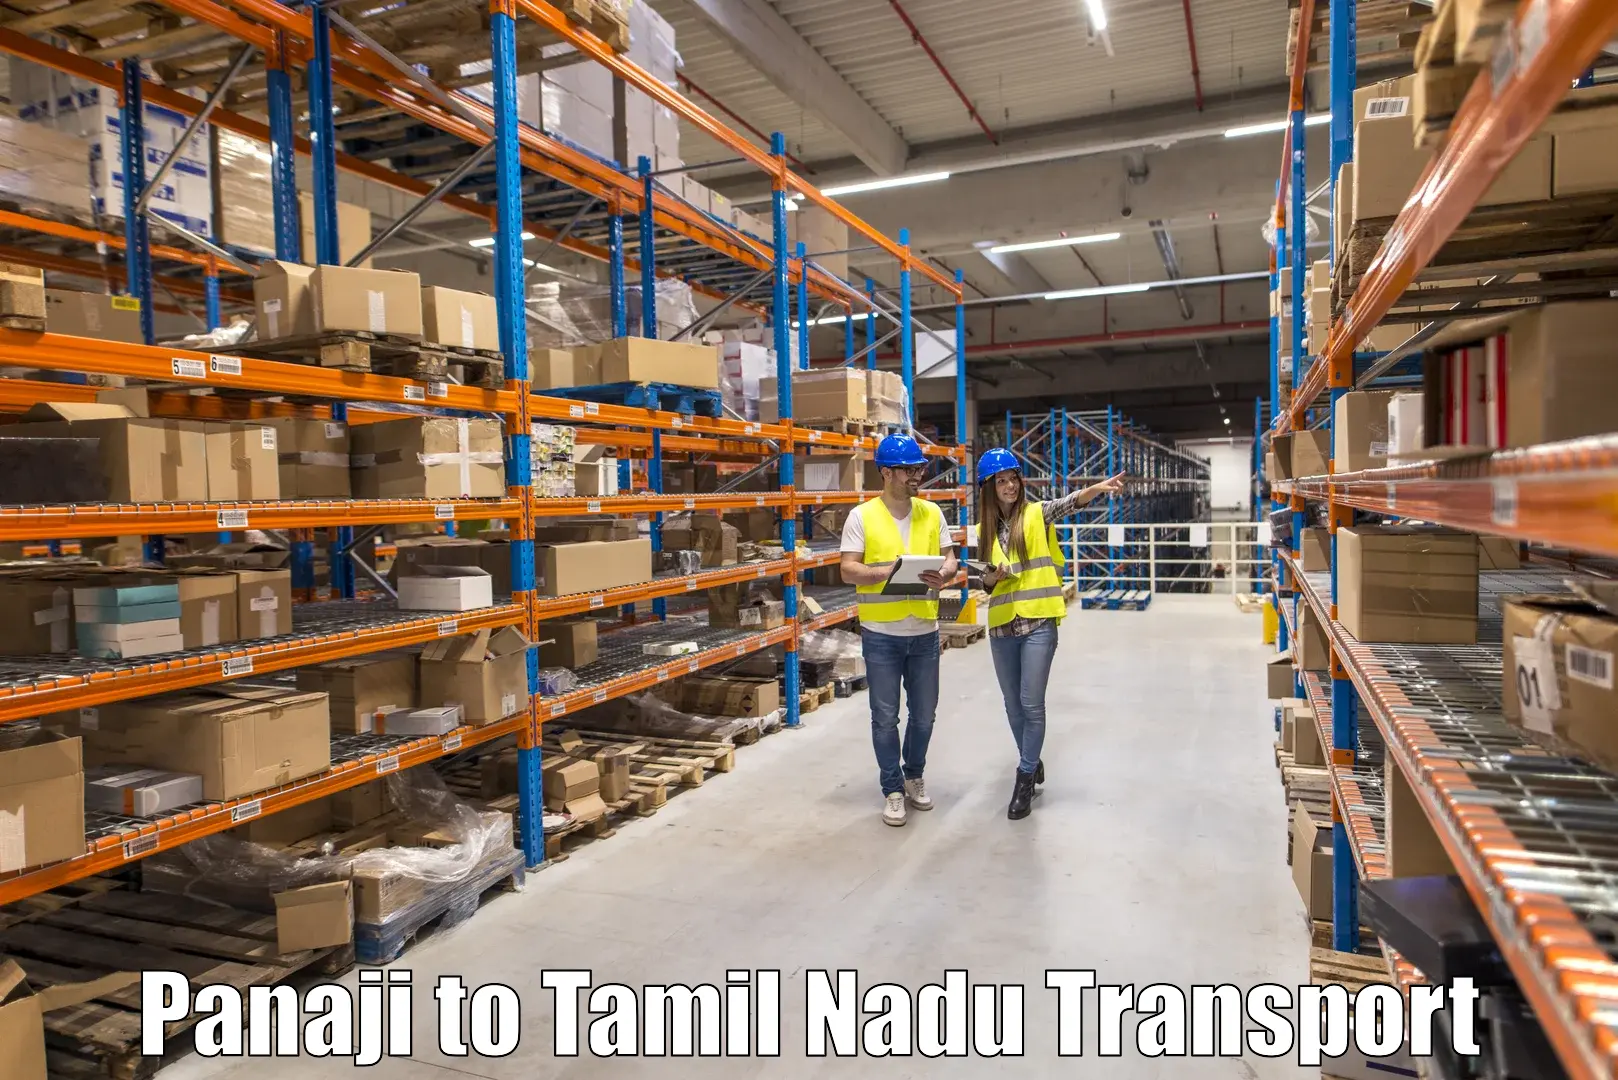 Shipping partner Panaji to Arani